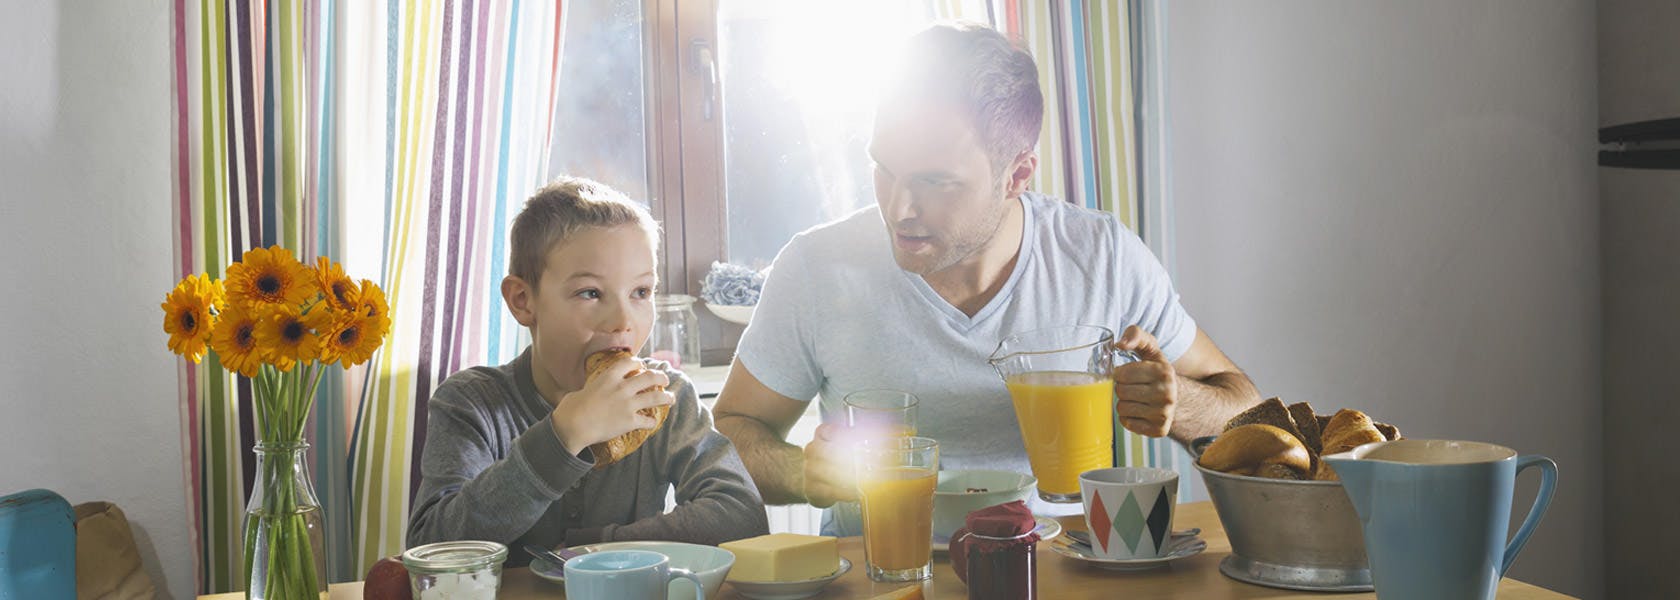 Cha và con ngồi ăn sáng ở bàn ăn